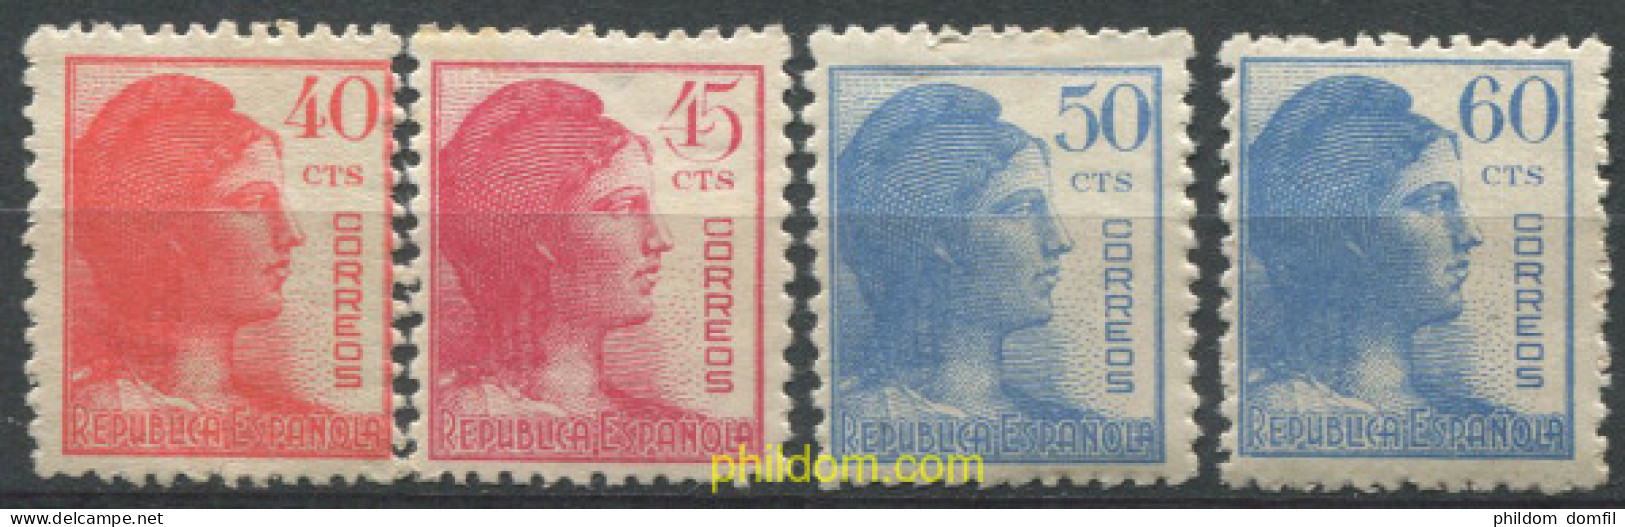 700297 MNH ESPAÑA 1938 ALEGORIA DE LA REPUBLICA - Unused Stamps